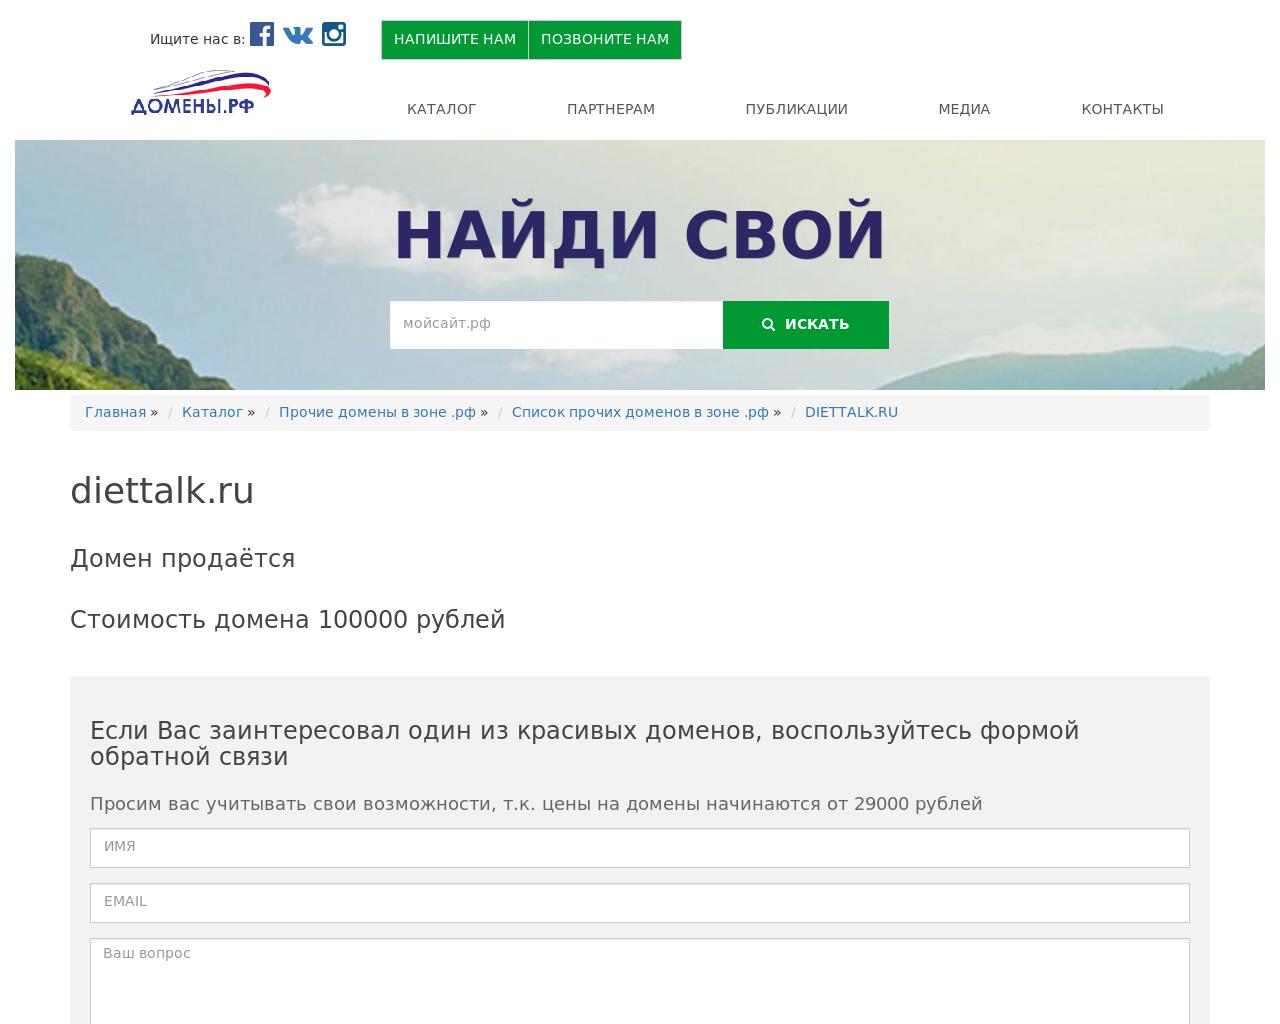 Изображение сайта diettalk.ru в разрешении 1280x1024